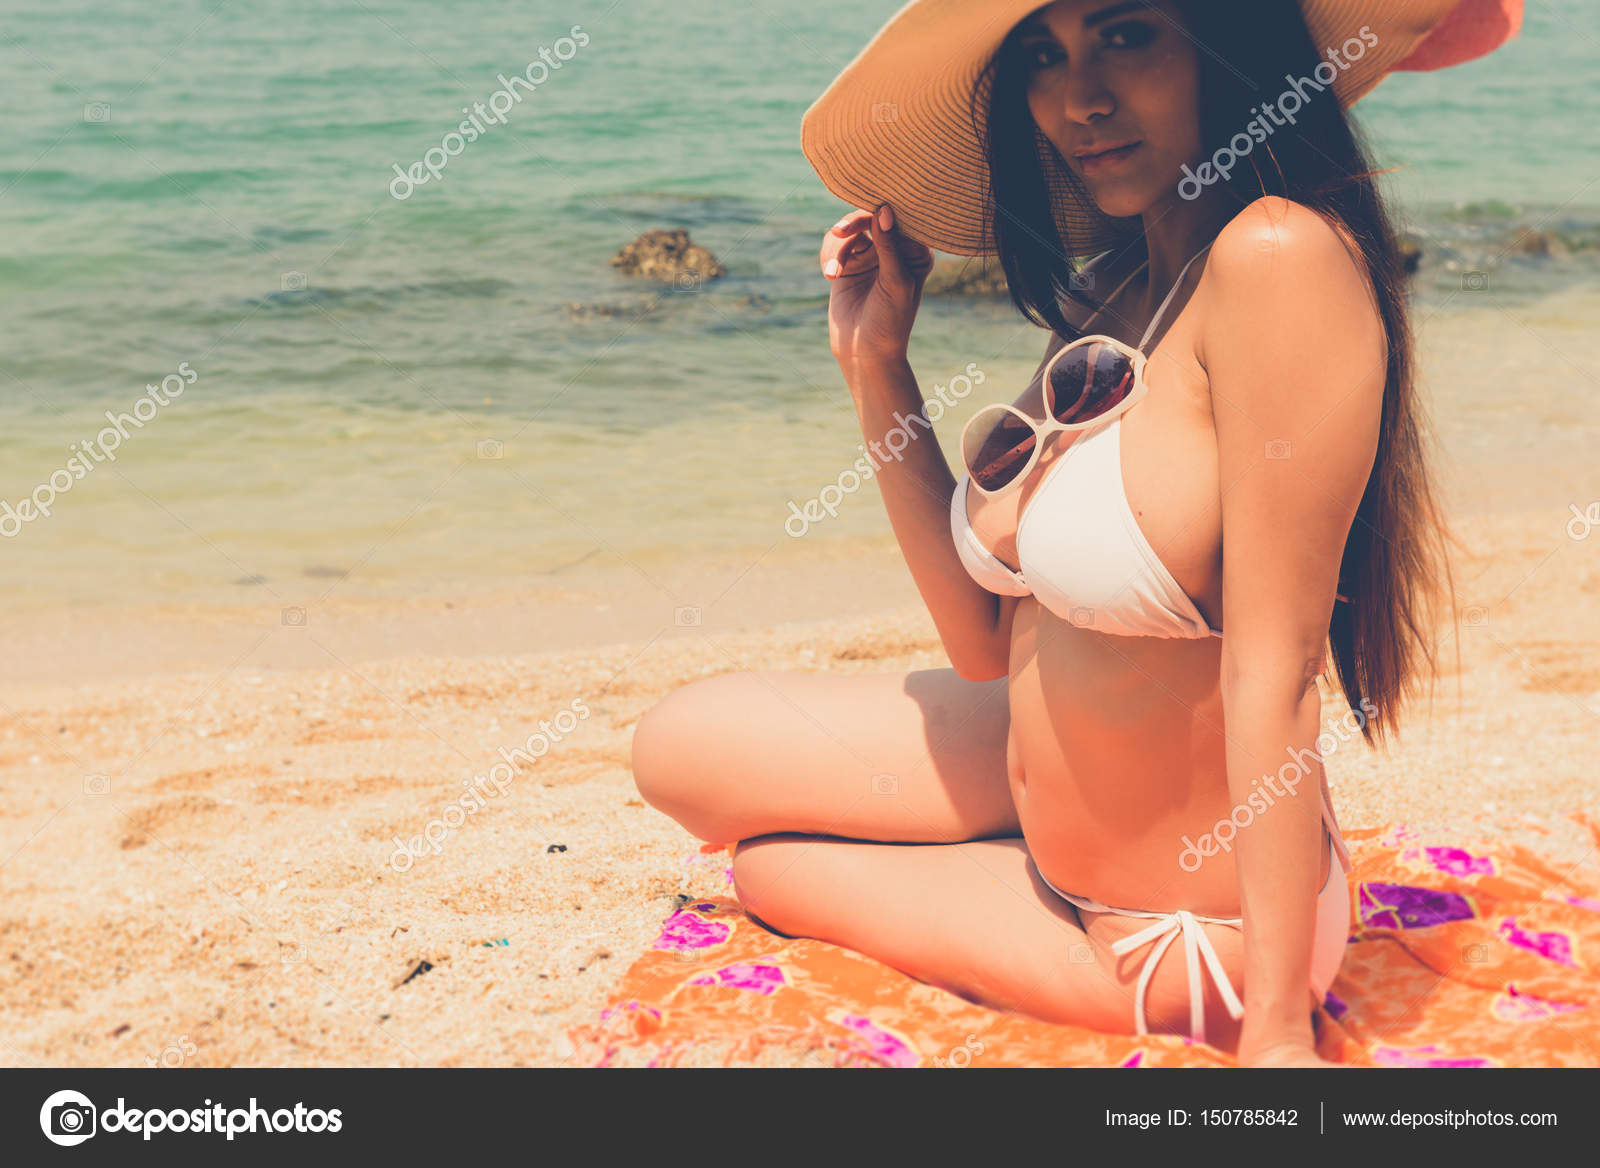 Beautiful attractive large breast asian bikini woman sitting on